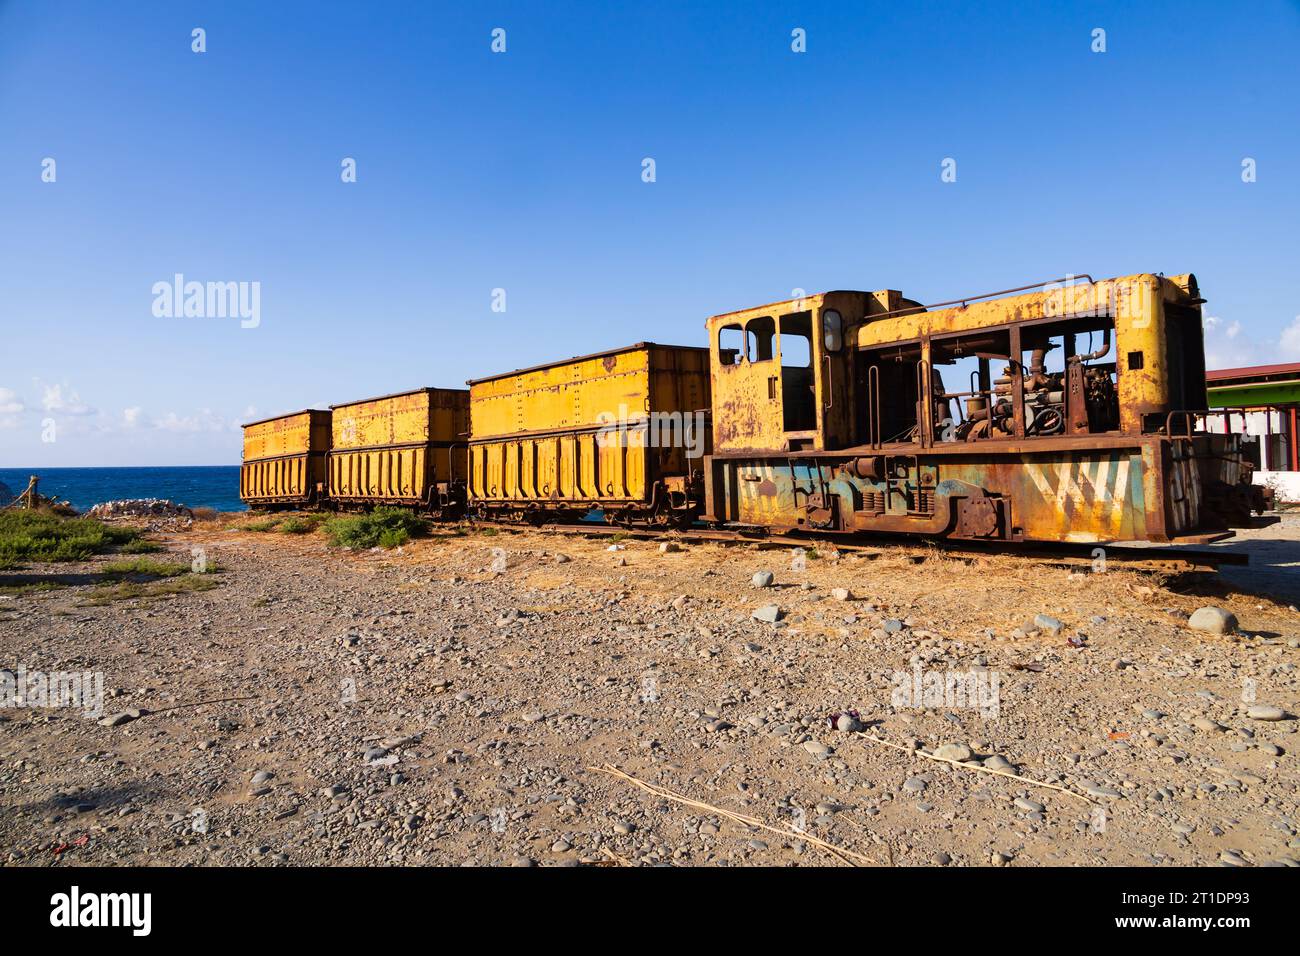 Verlassener, alter Dieselmotor der Cyprus Mining Corporation am Strand von Gemikonagi, Morfou, Türkische Republik Nordzypern Stockfoto